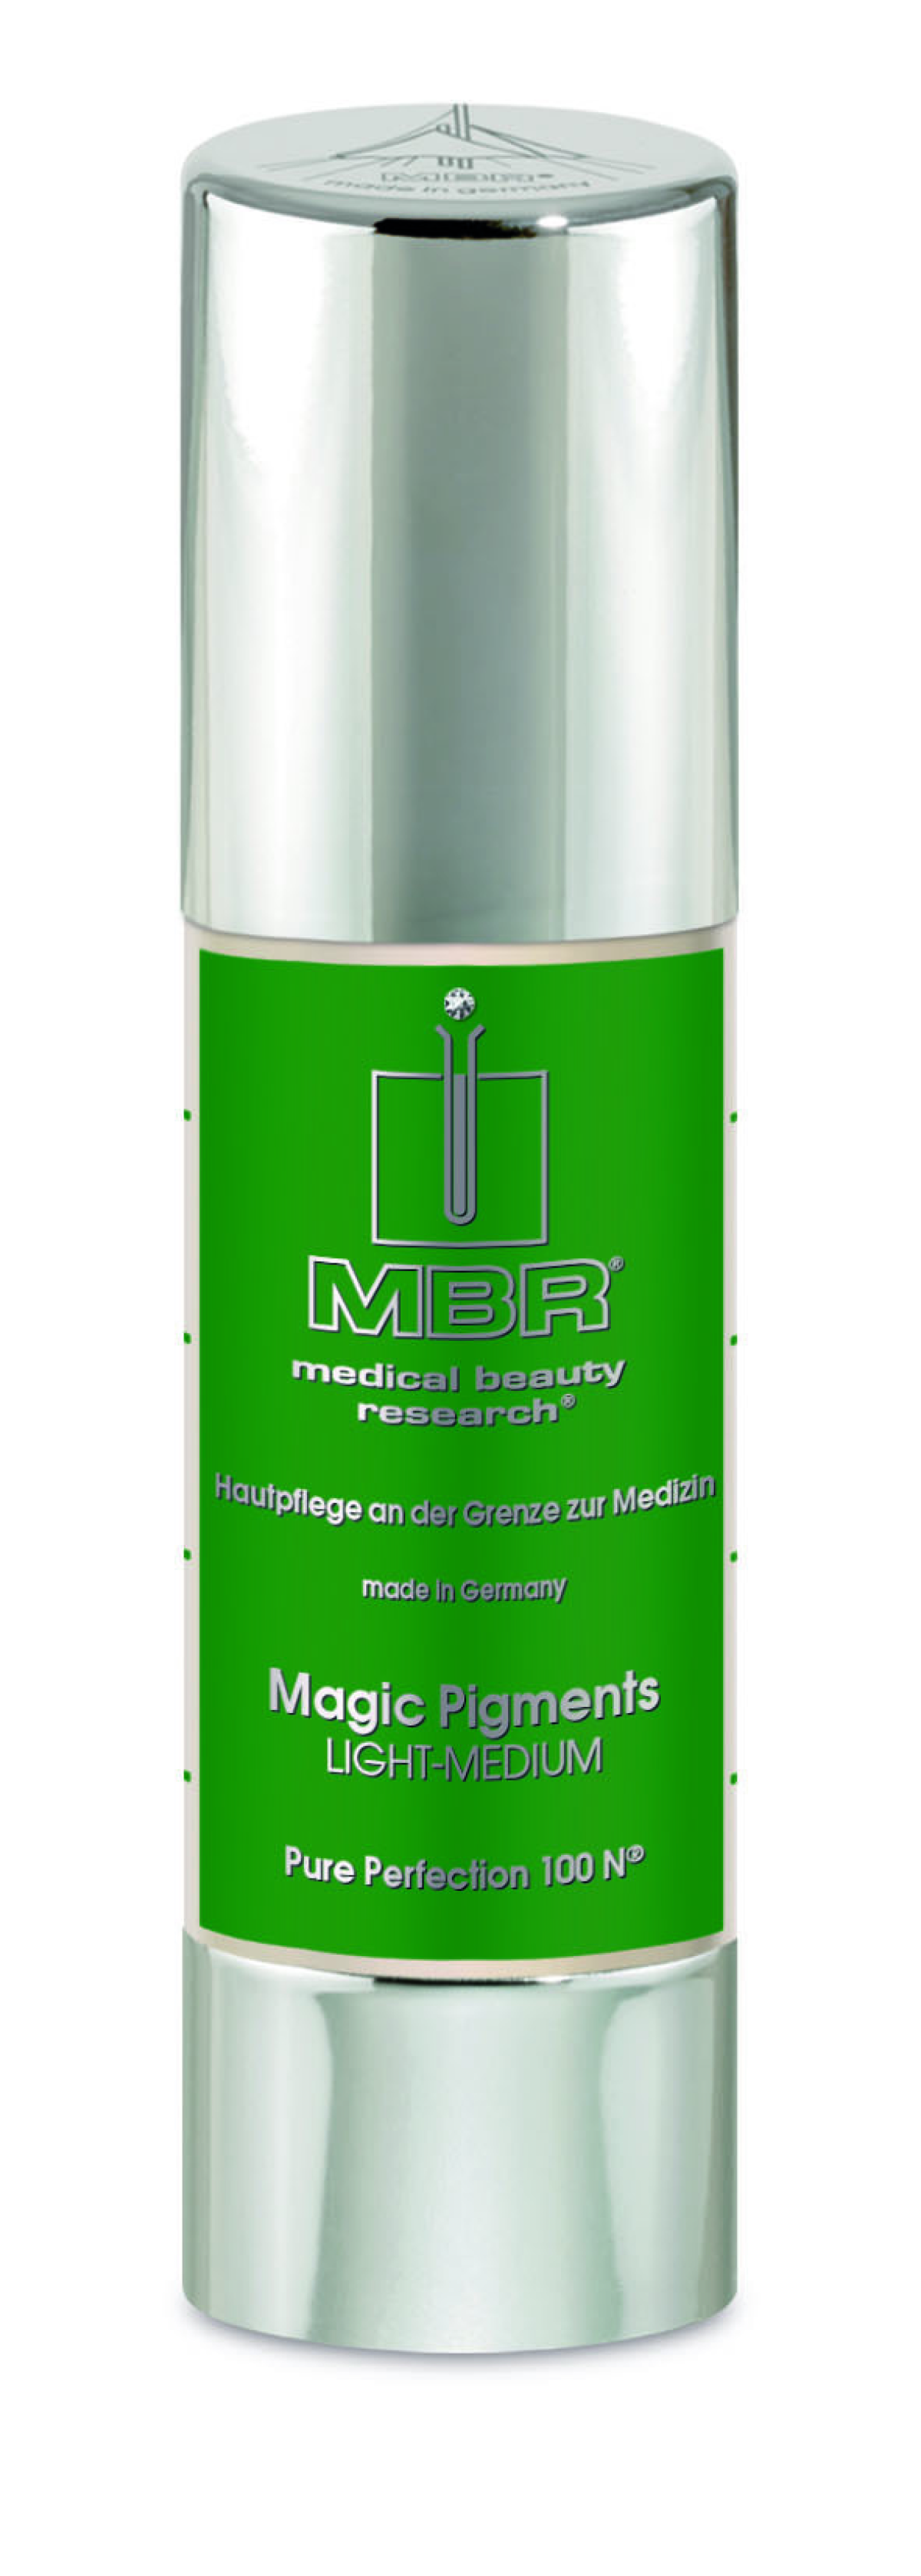 MBR Magic Pigments